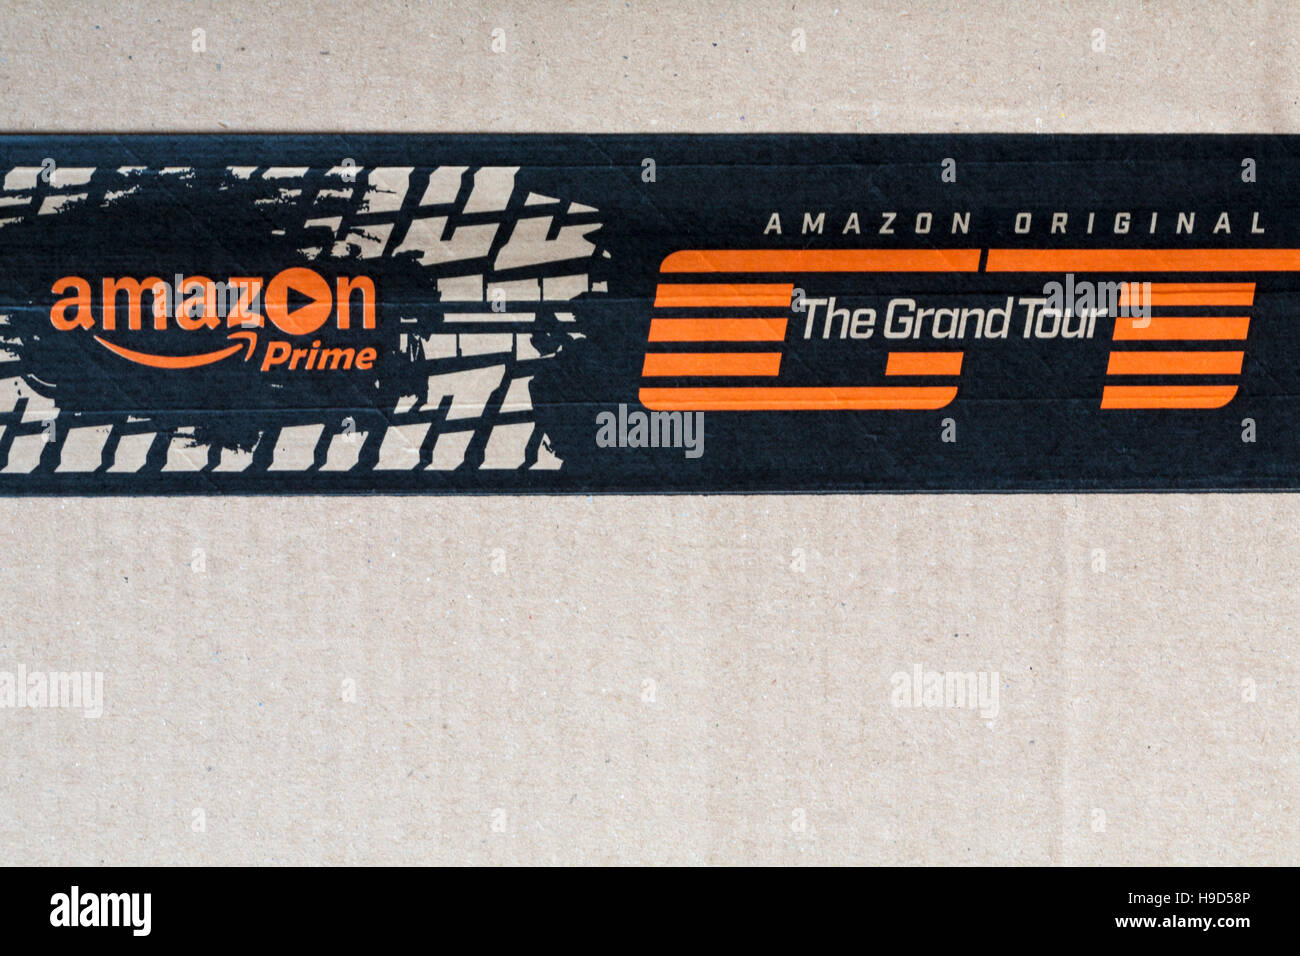 Amazon Prime logo  Amazon Original The Grand Tour tape on parcel from Amazon Stock Photo